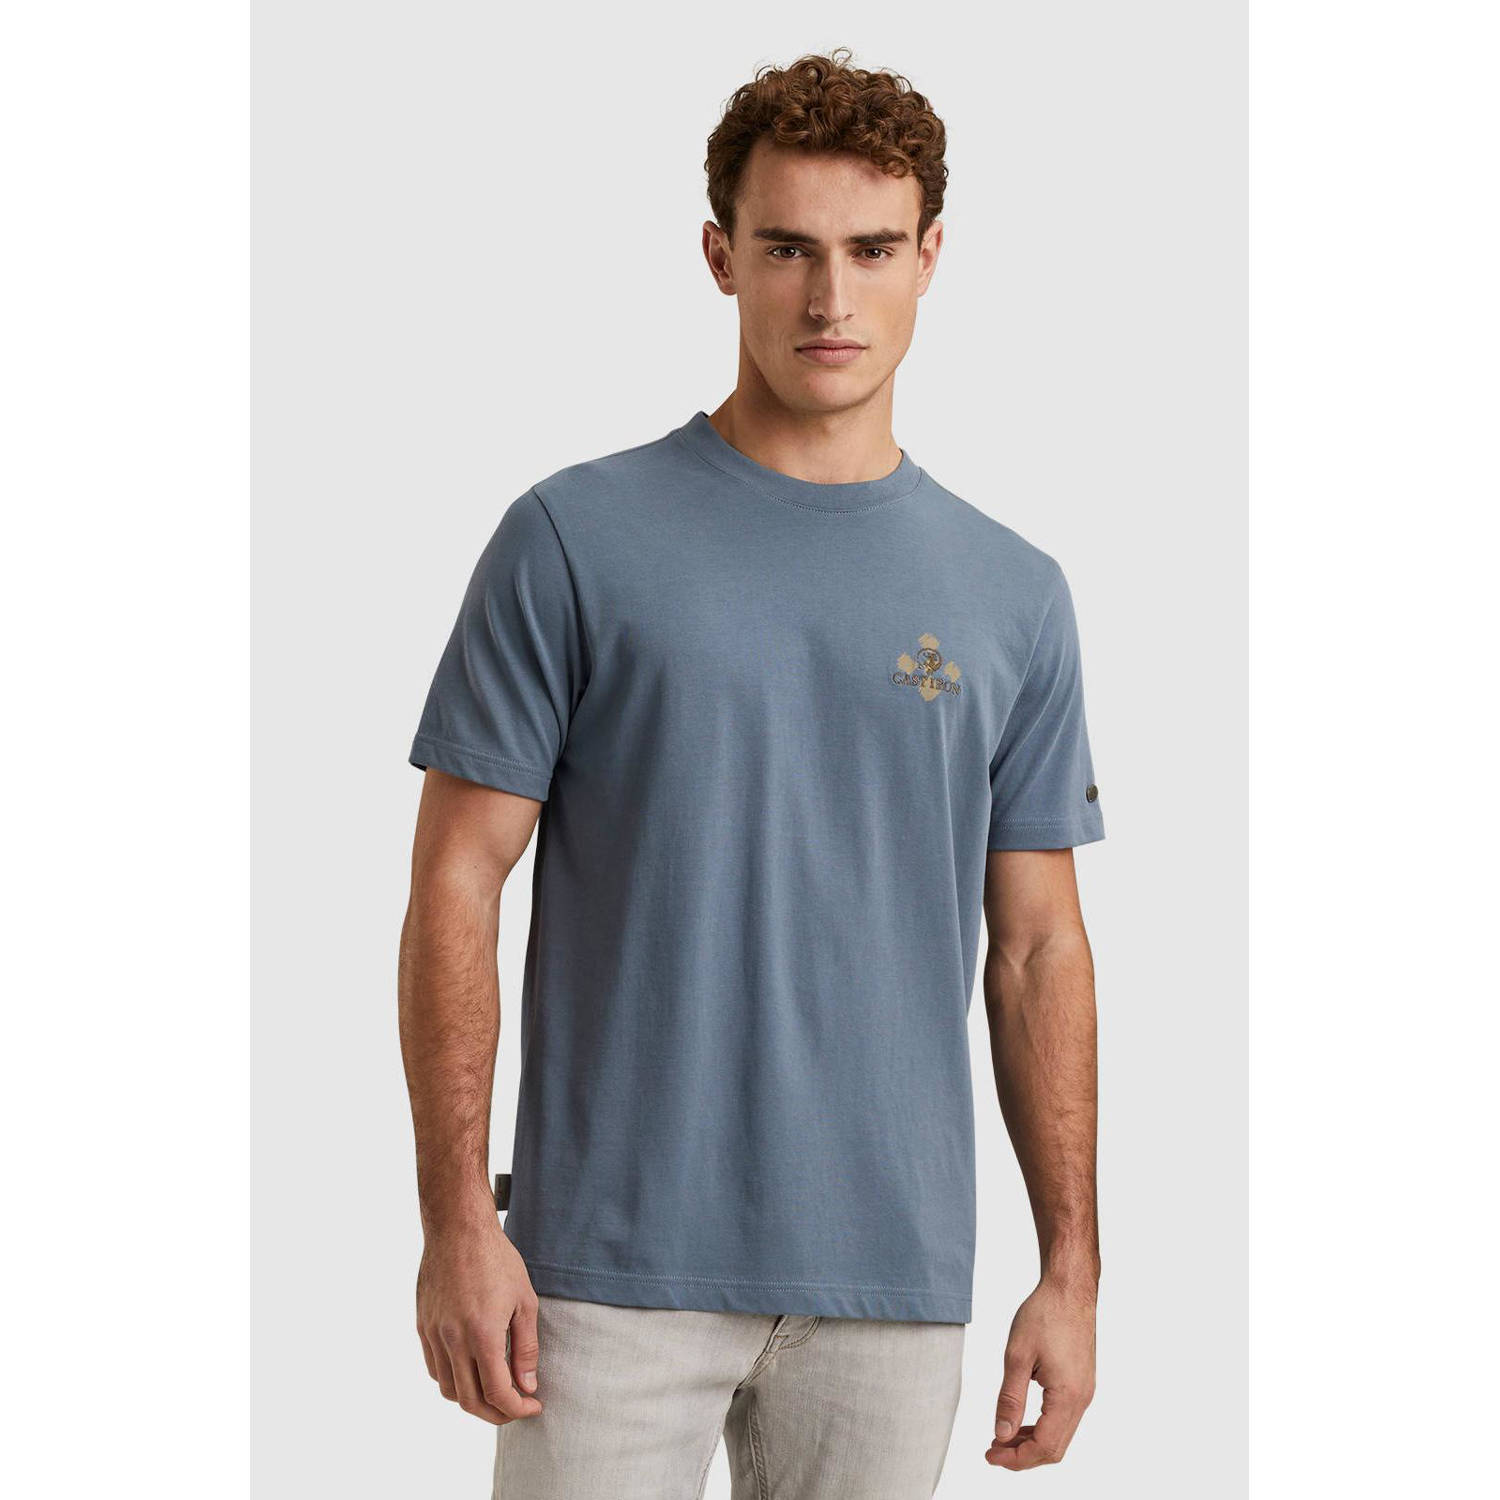 Cast Iron T-shirt met backprint blauw